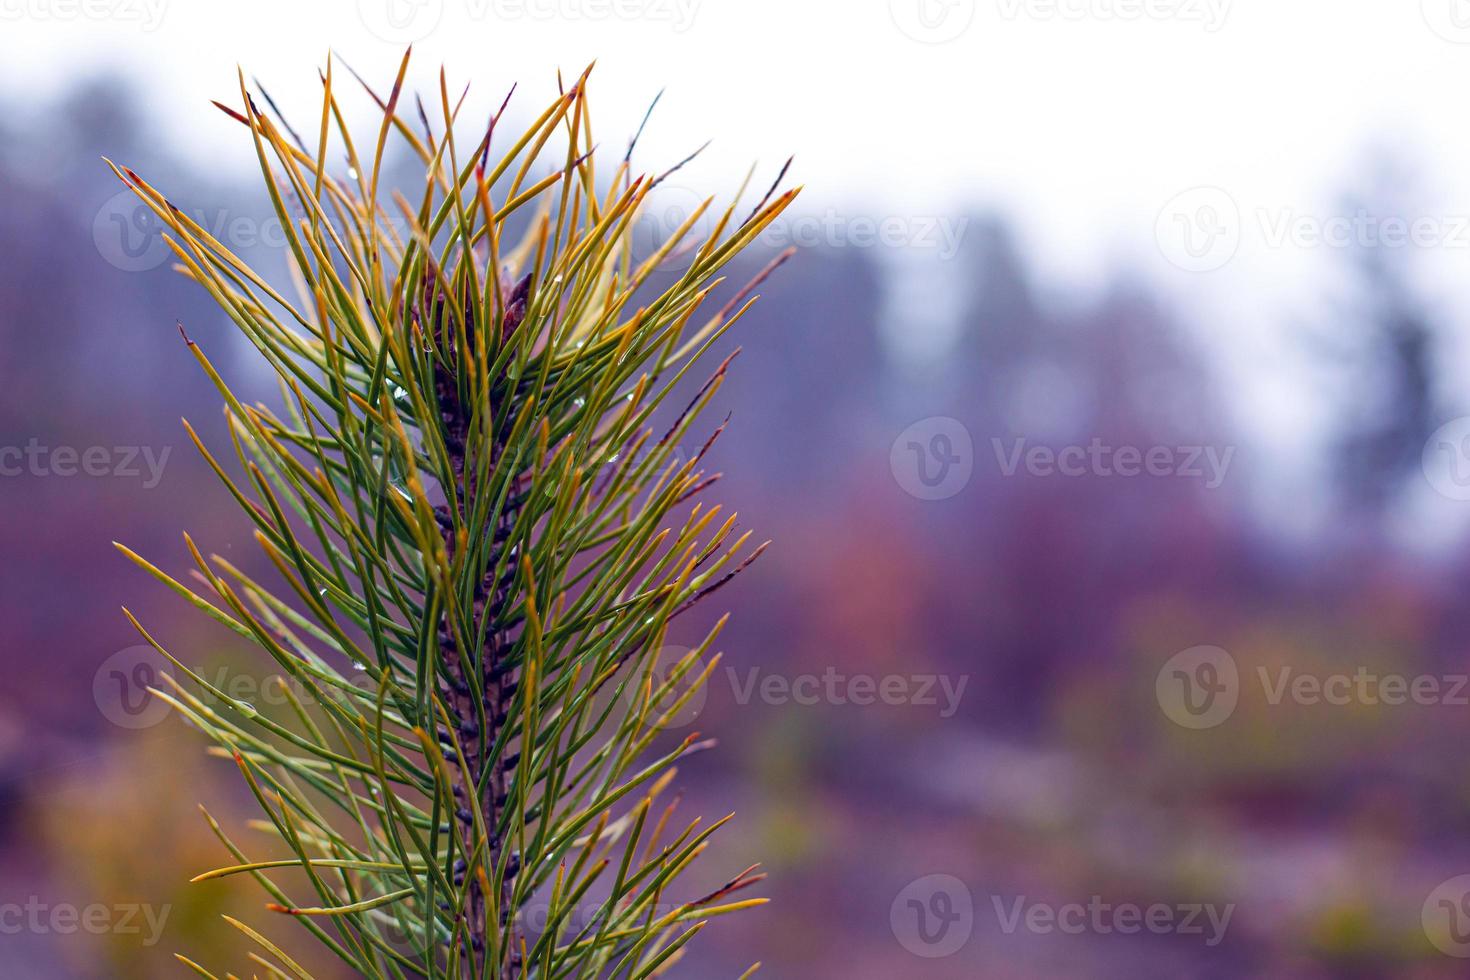 takje naaldhout groenblijvende den op wazig bos achtergrond met dauw druppels foto